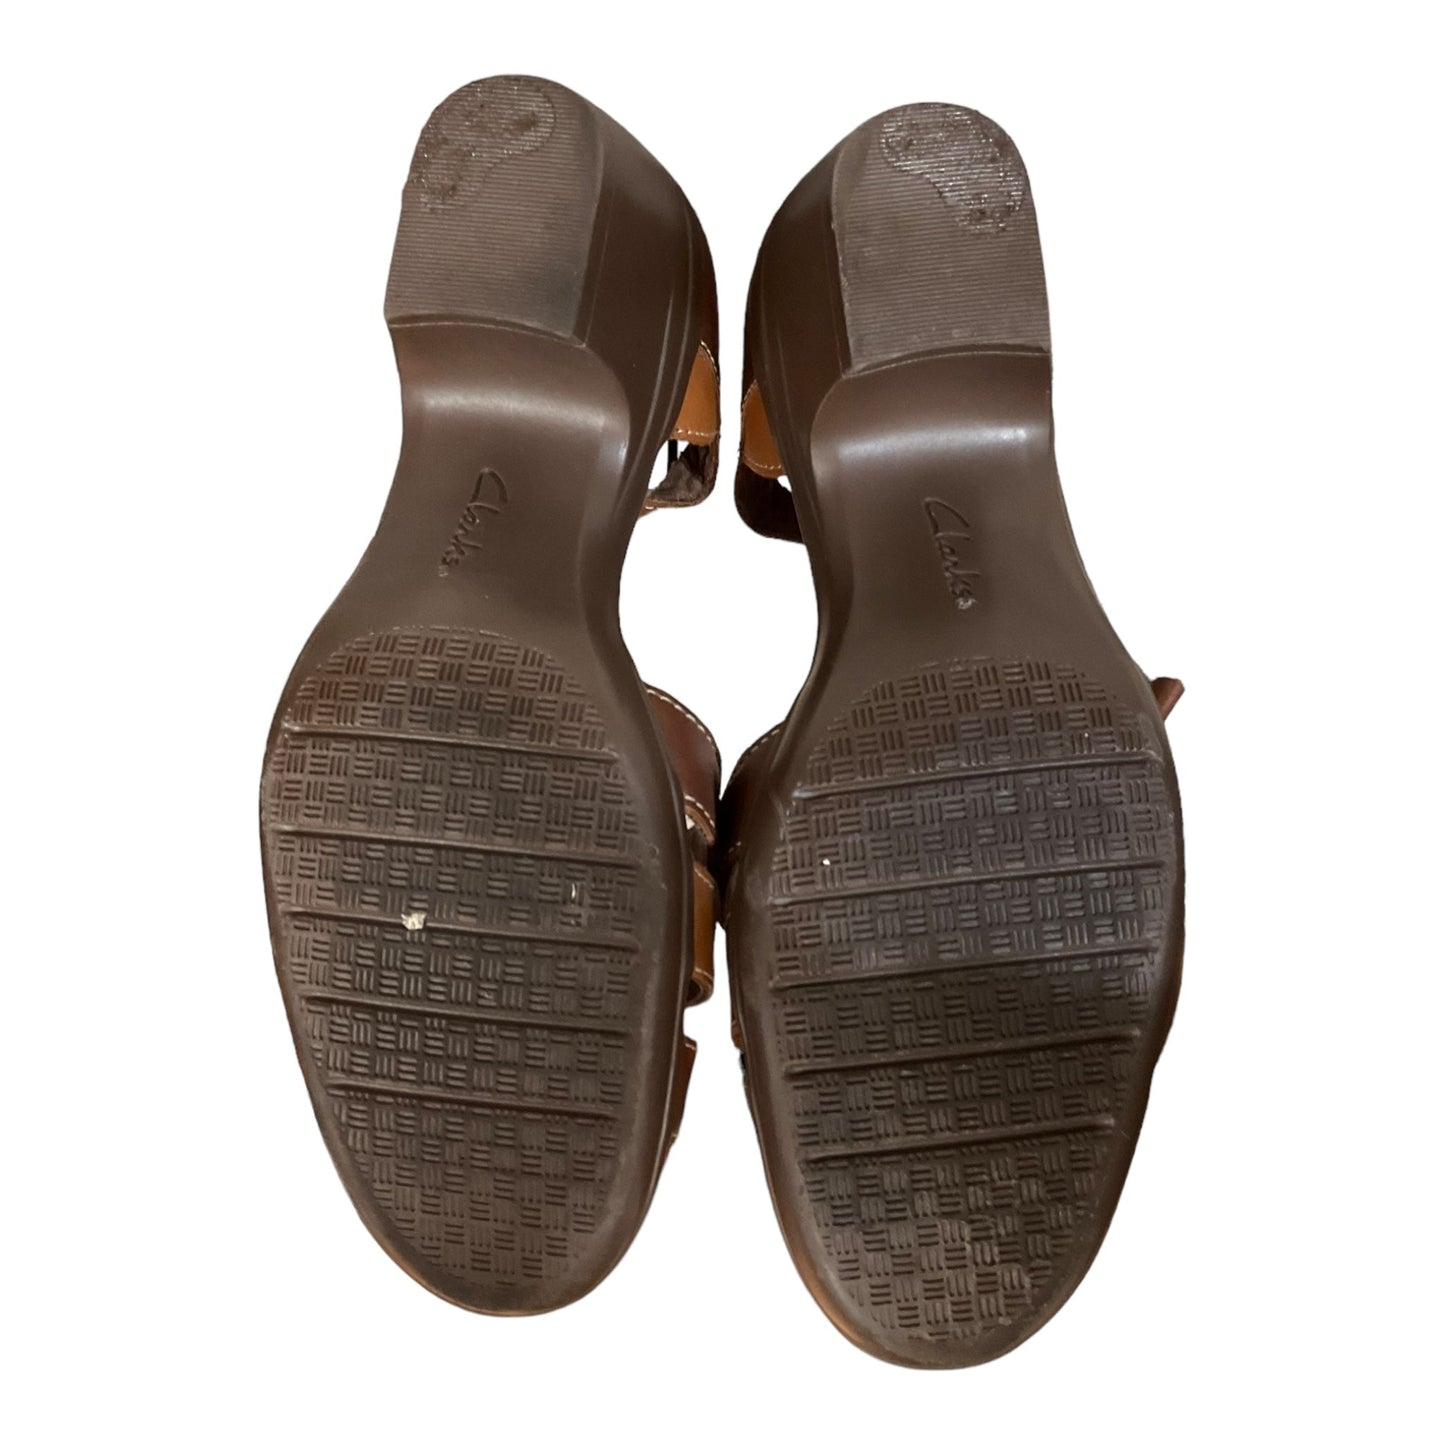 Brown Shoes Heels Block Clarks, Size 7.5